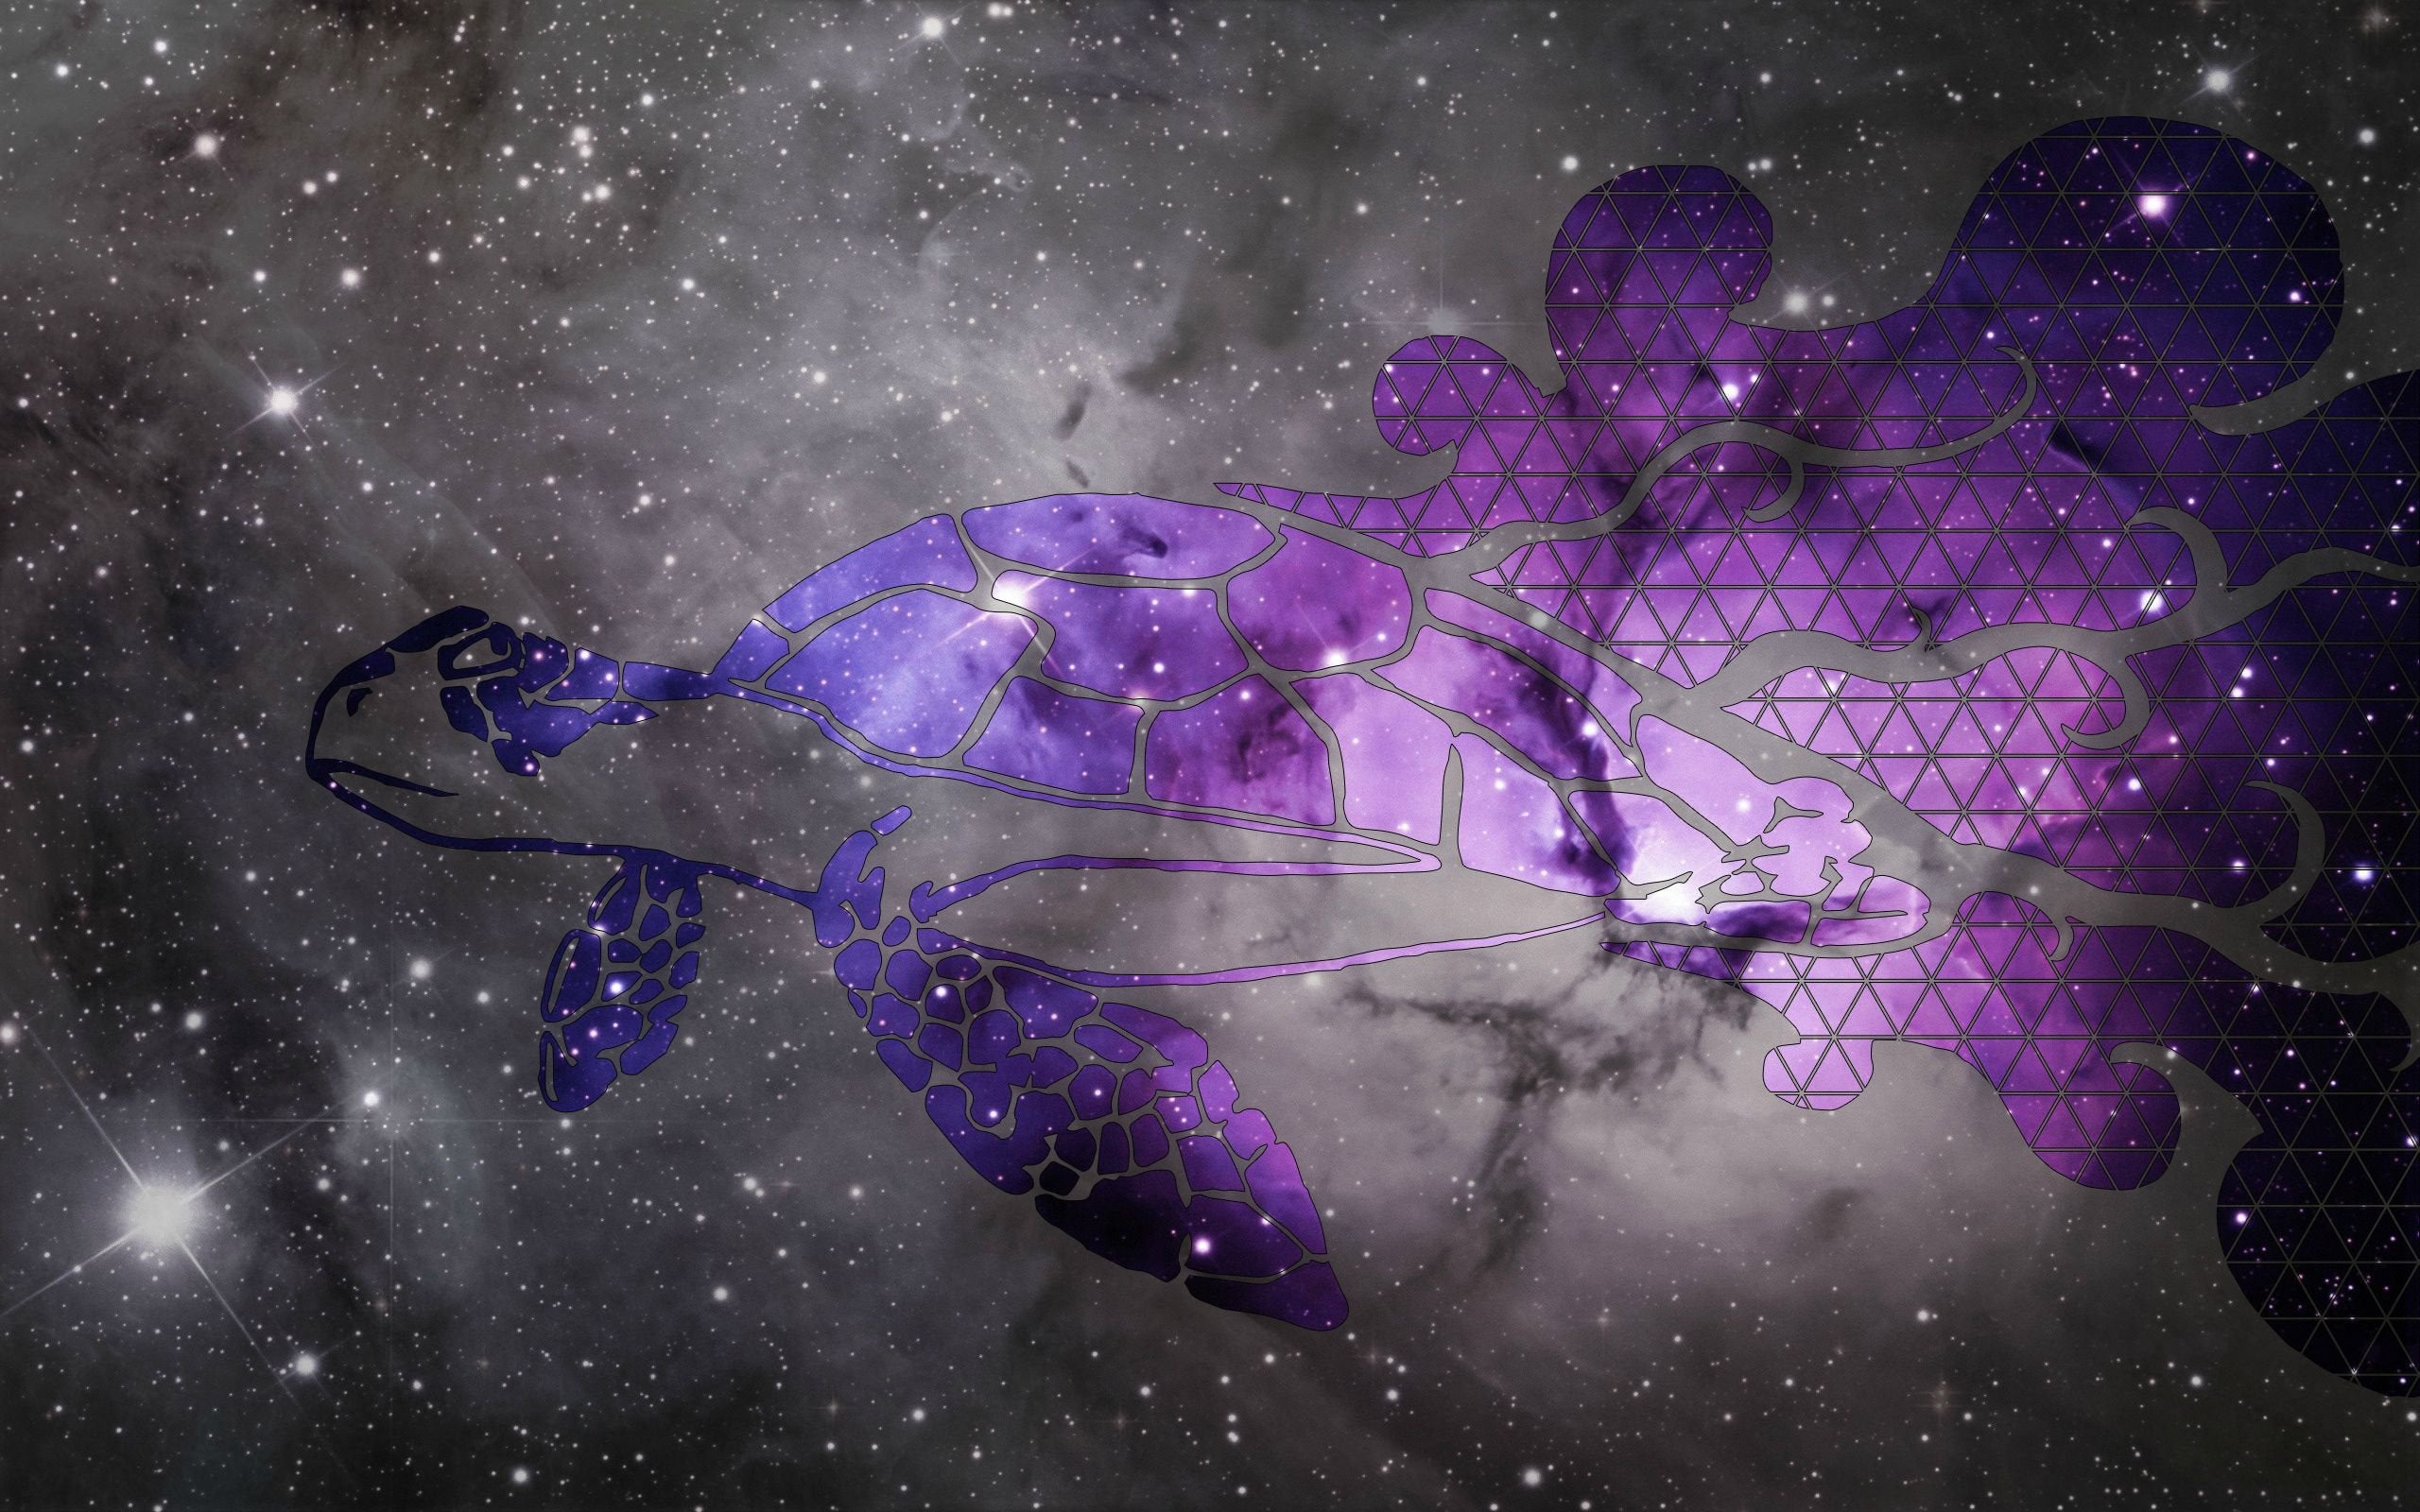 Purple Space Turtle Wallpaper R Imaginaryturtleworlds